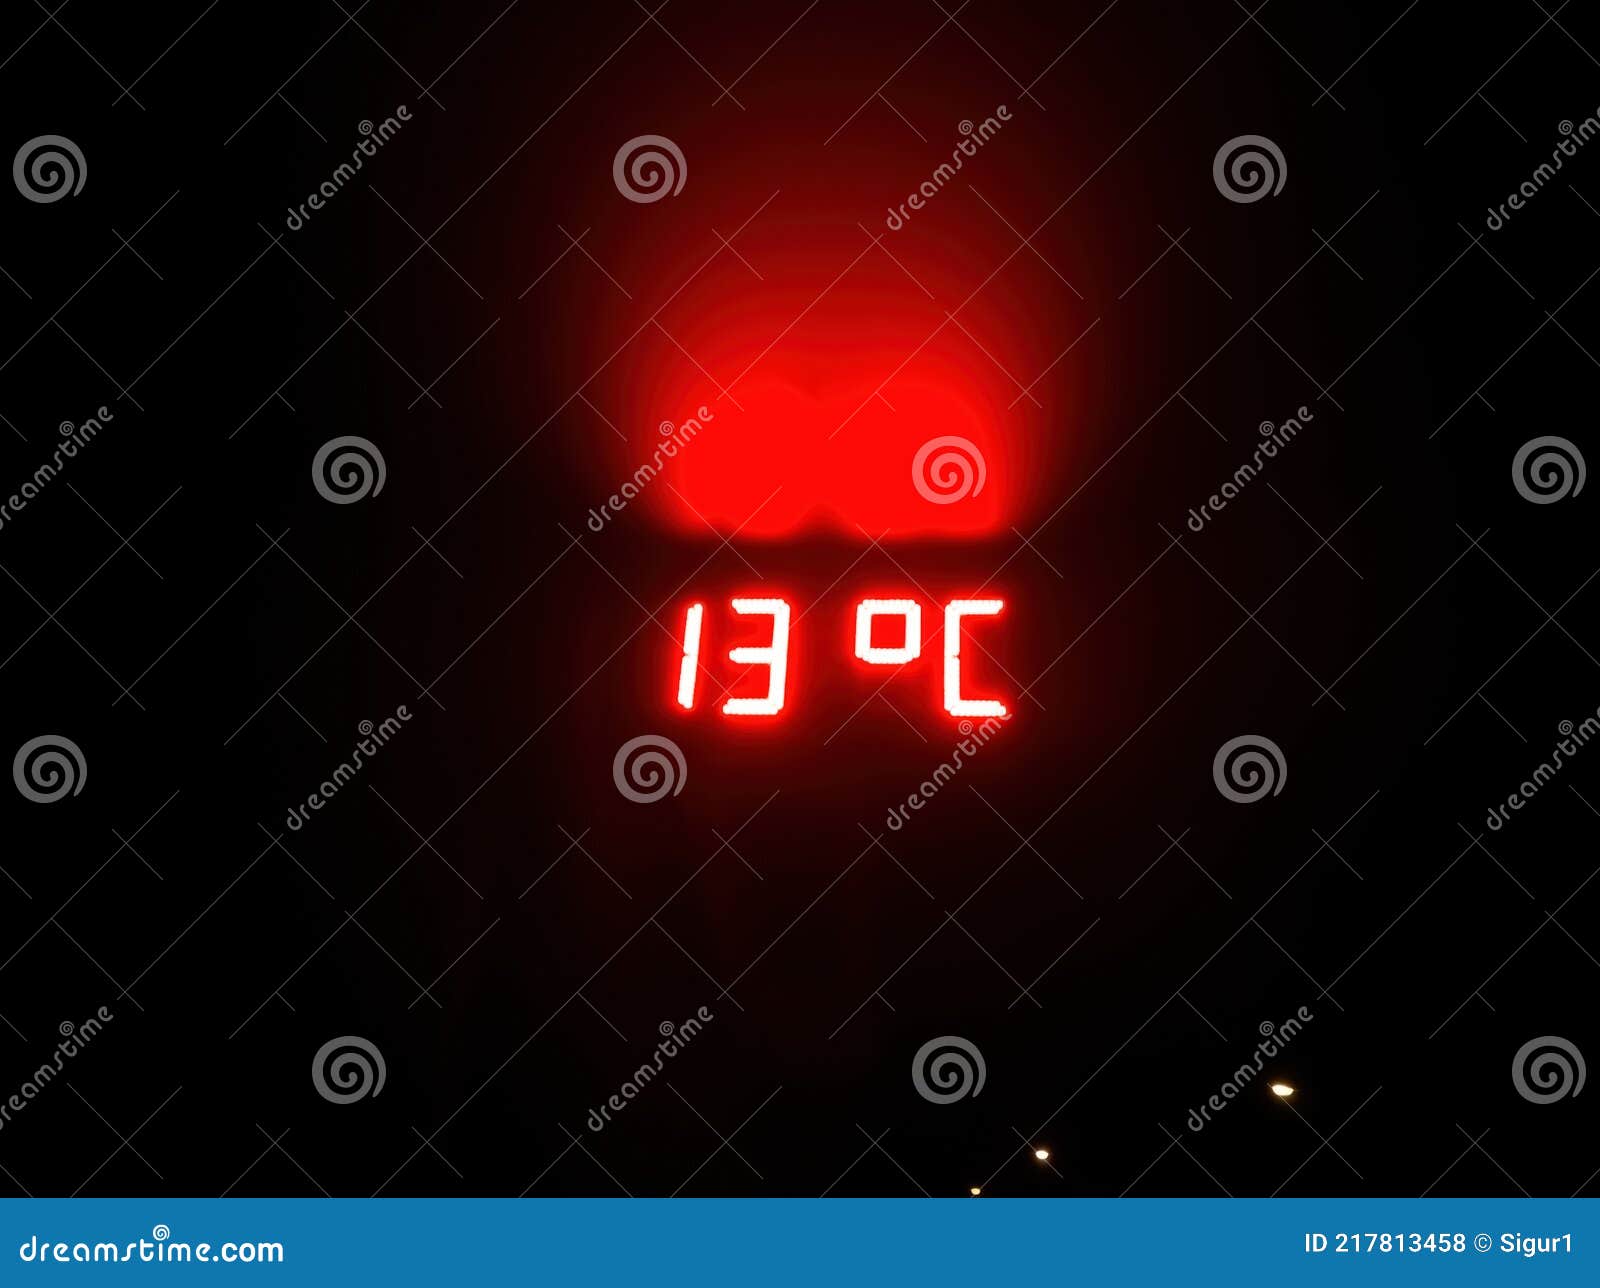 luminous sign of temperature at night